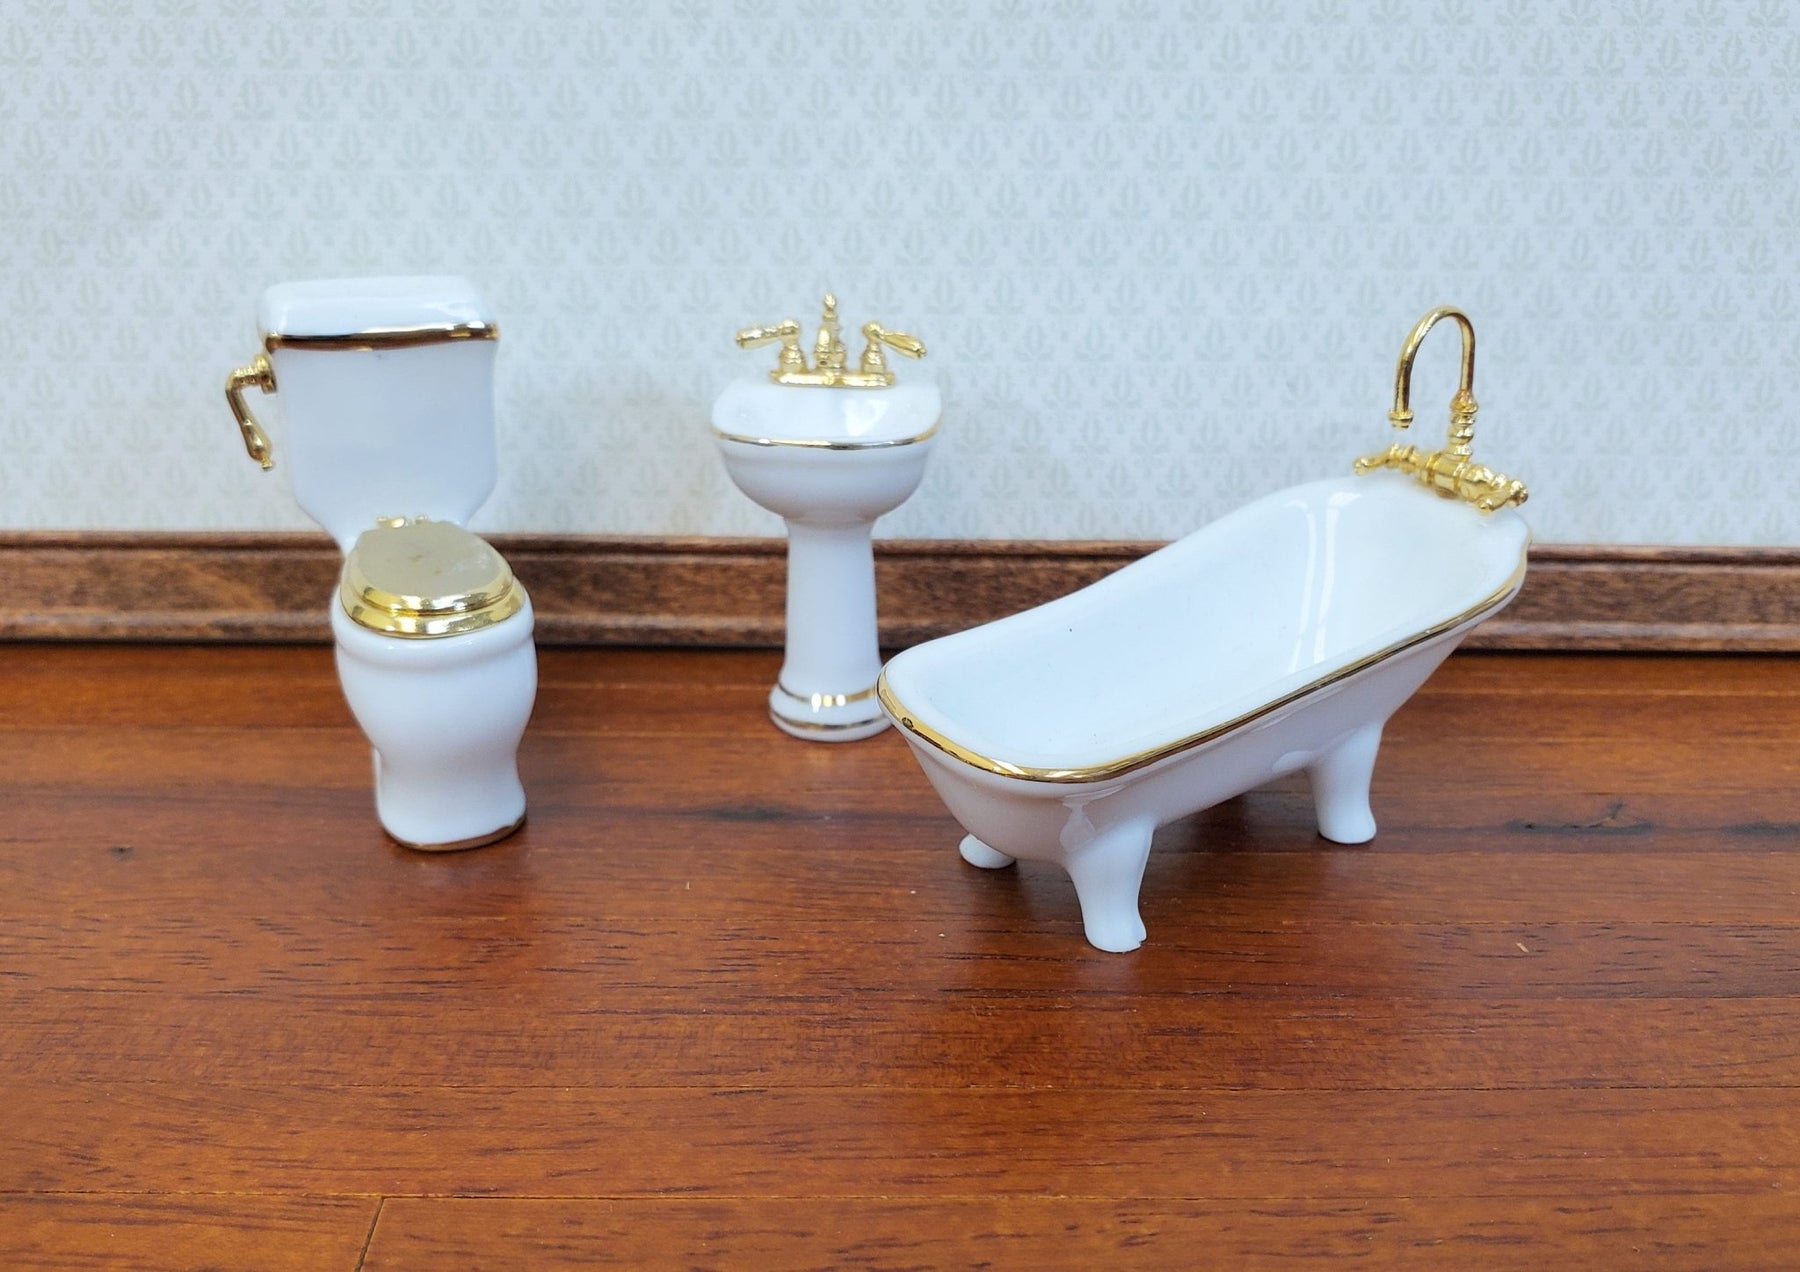 Dollhouse HALF Tub Reutter - Accents Crush Toilet Gold Miniature 1:24 Set Sink Miniatures Bathroom SCALE 24k Porcelain